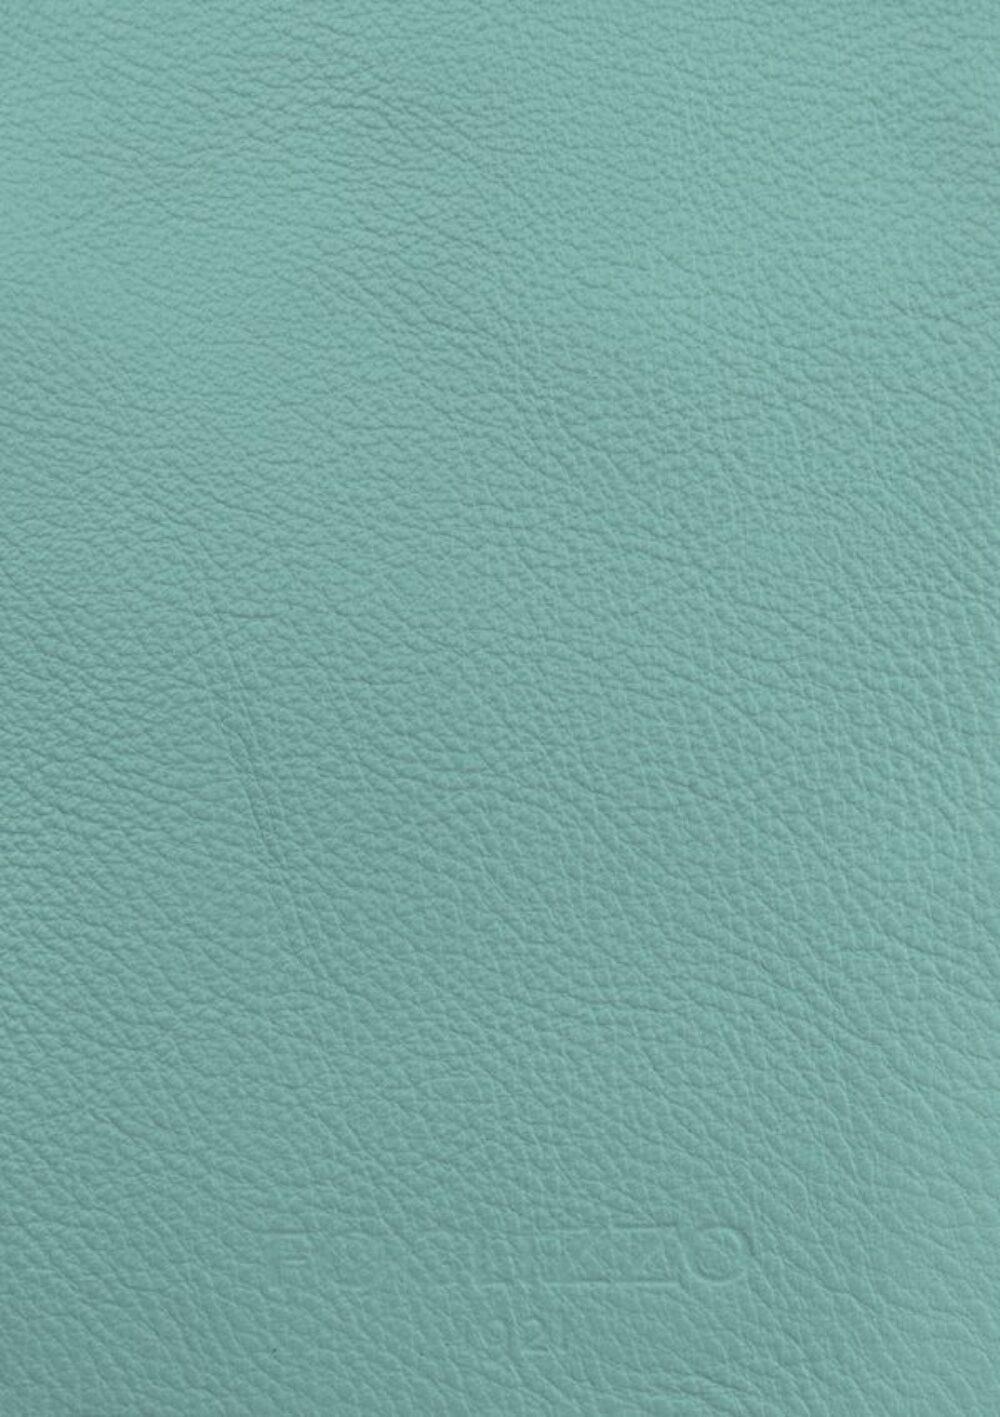 Luxusdesign und hochwertige Teppiche nach Maß • Marine Blue Green Jade